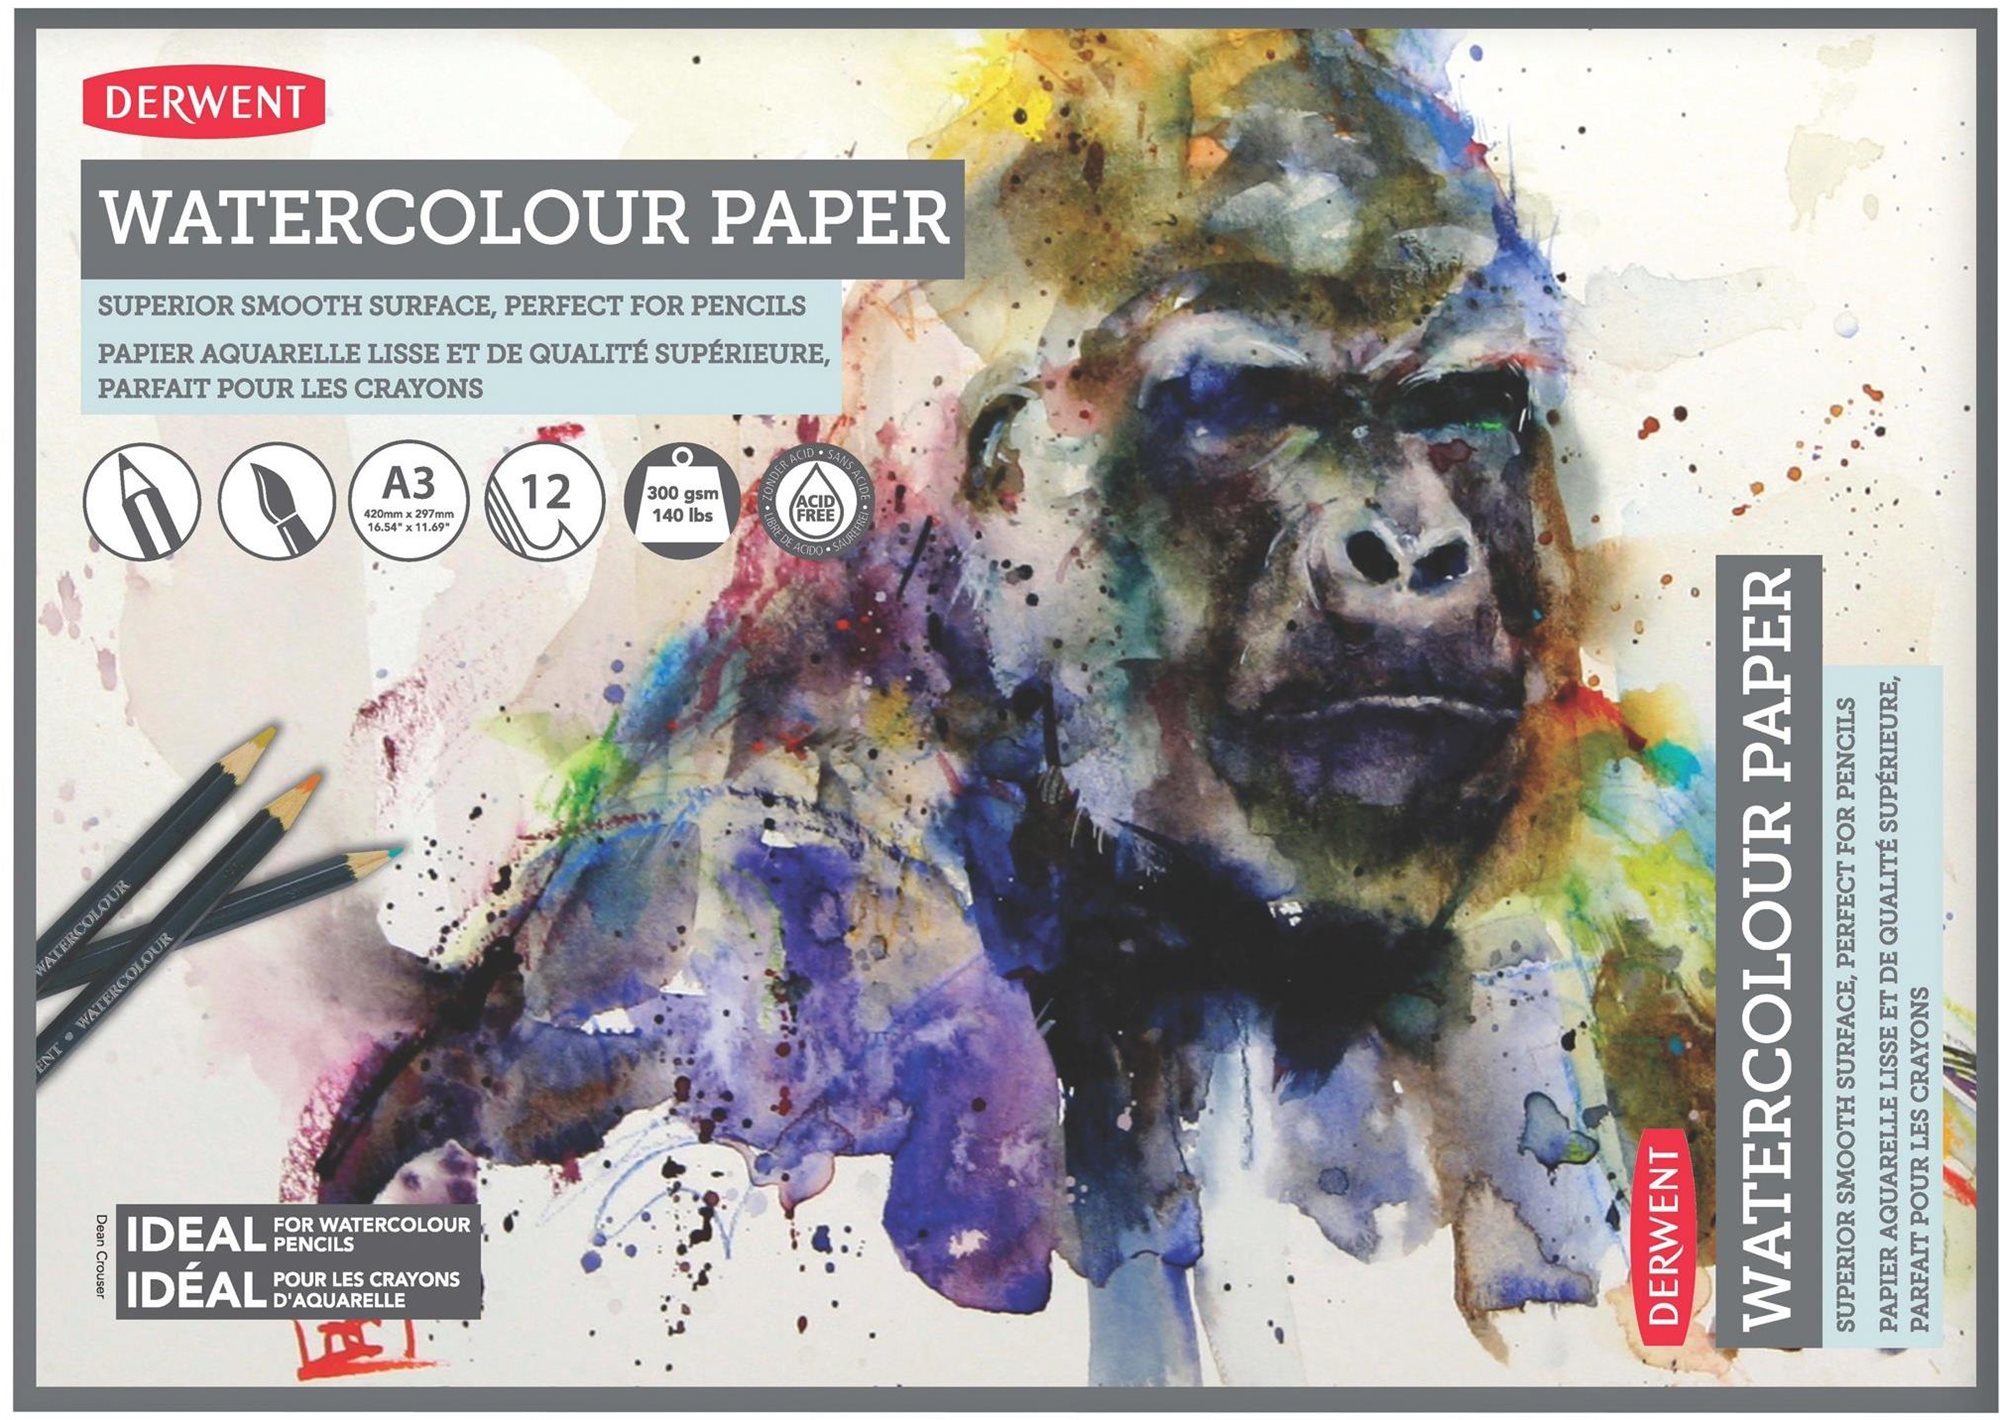 DERWENT Watercolour Paper A3 / 12 lap / 300g/m2